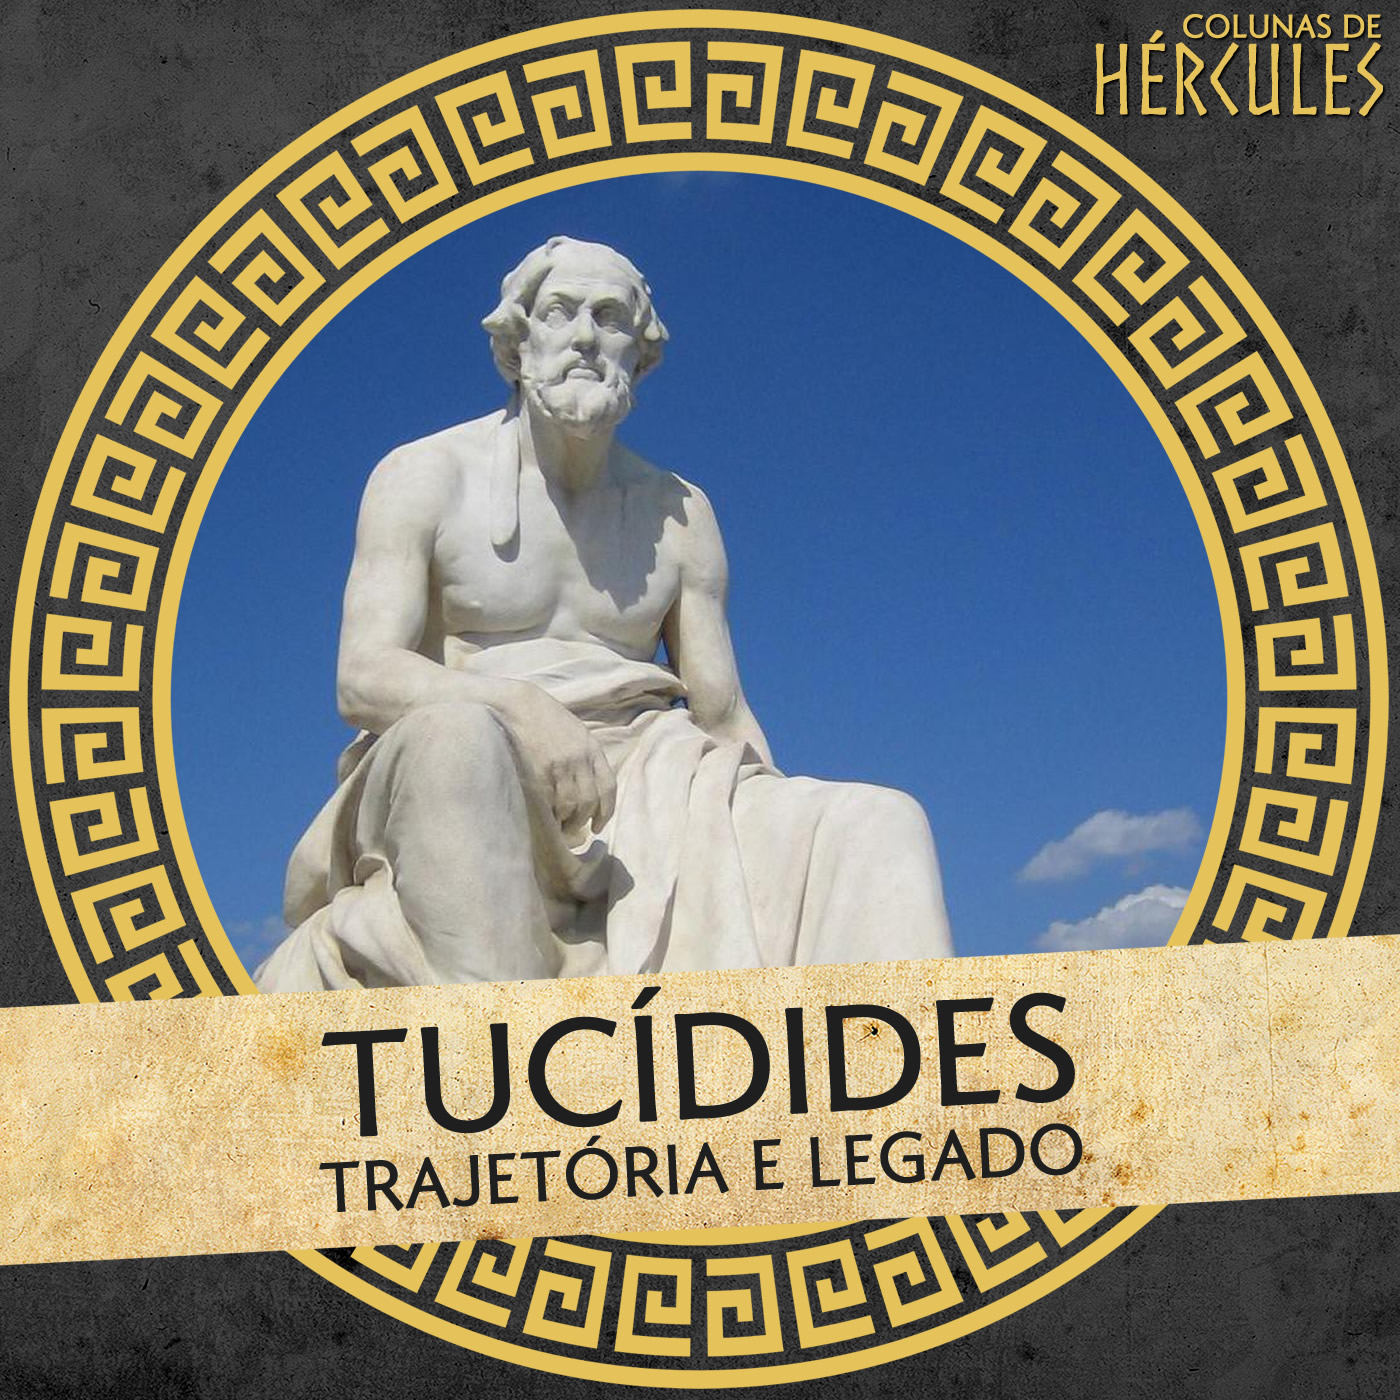 Tucídides: trajetória e legado